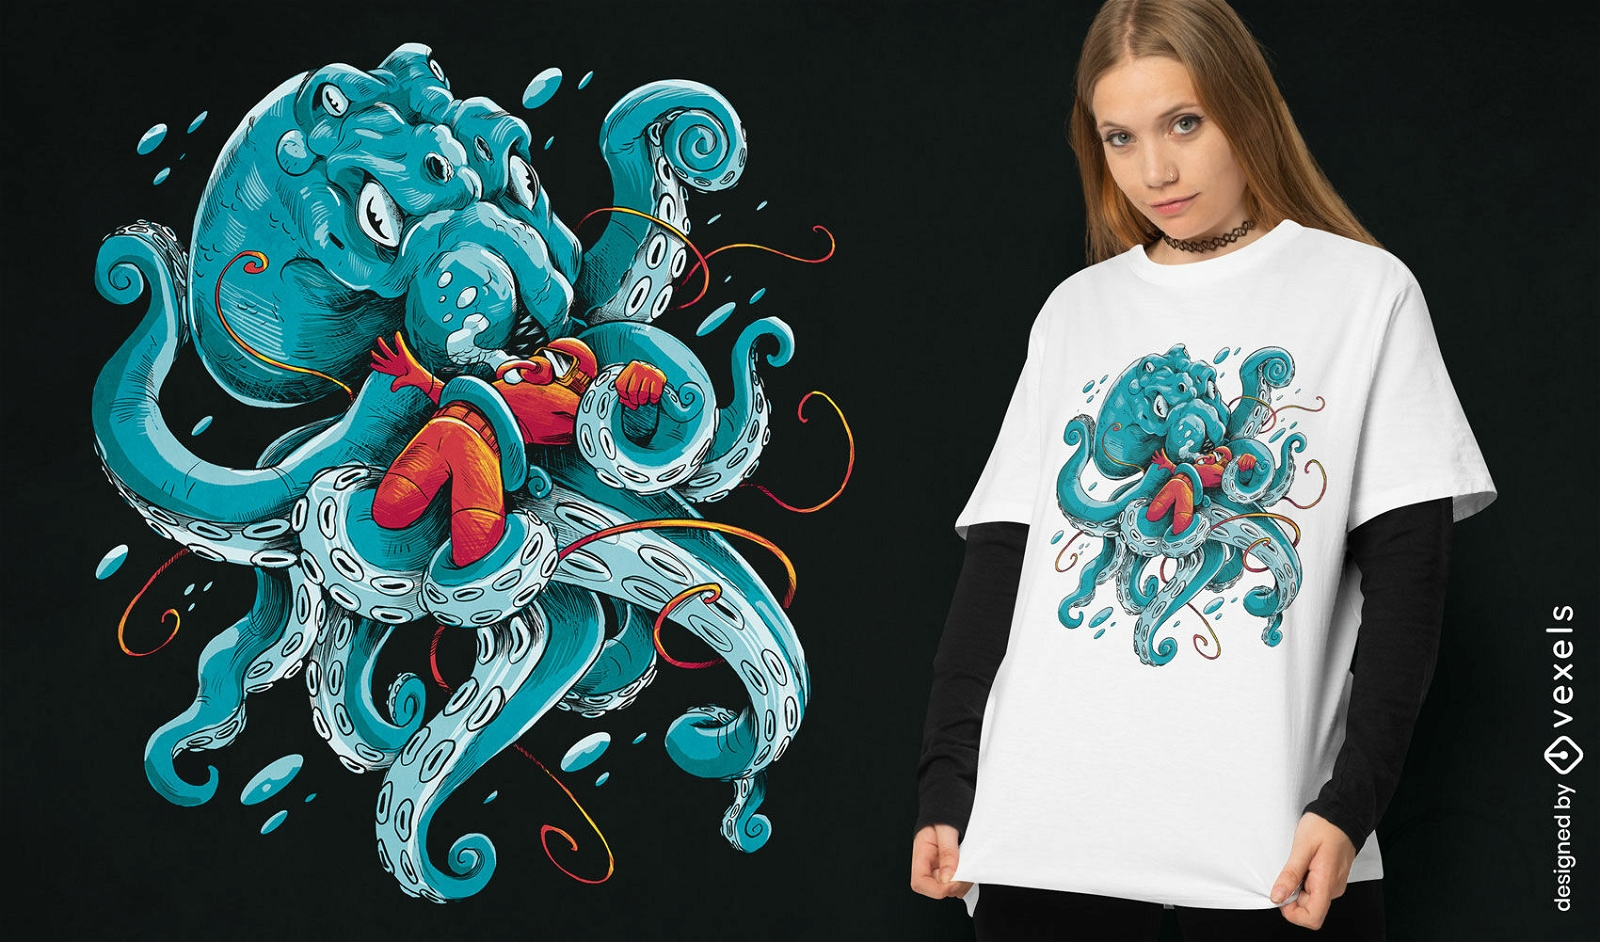 Oktopus-Tier- und Taucher-T-Shirt-Design